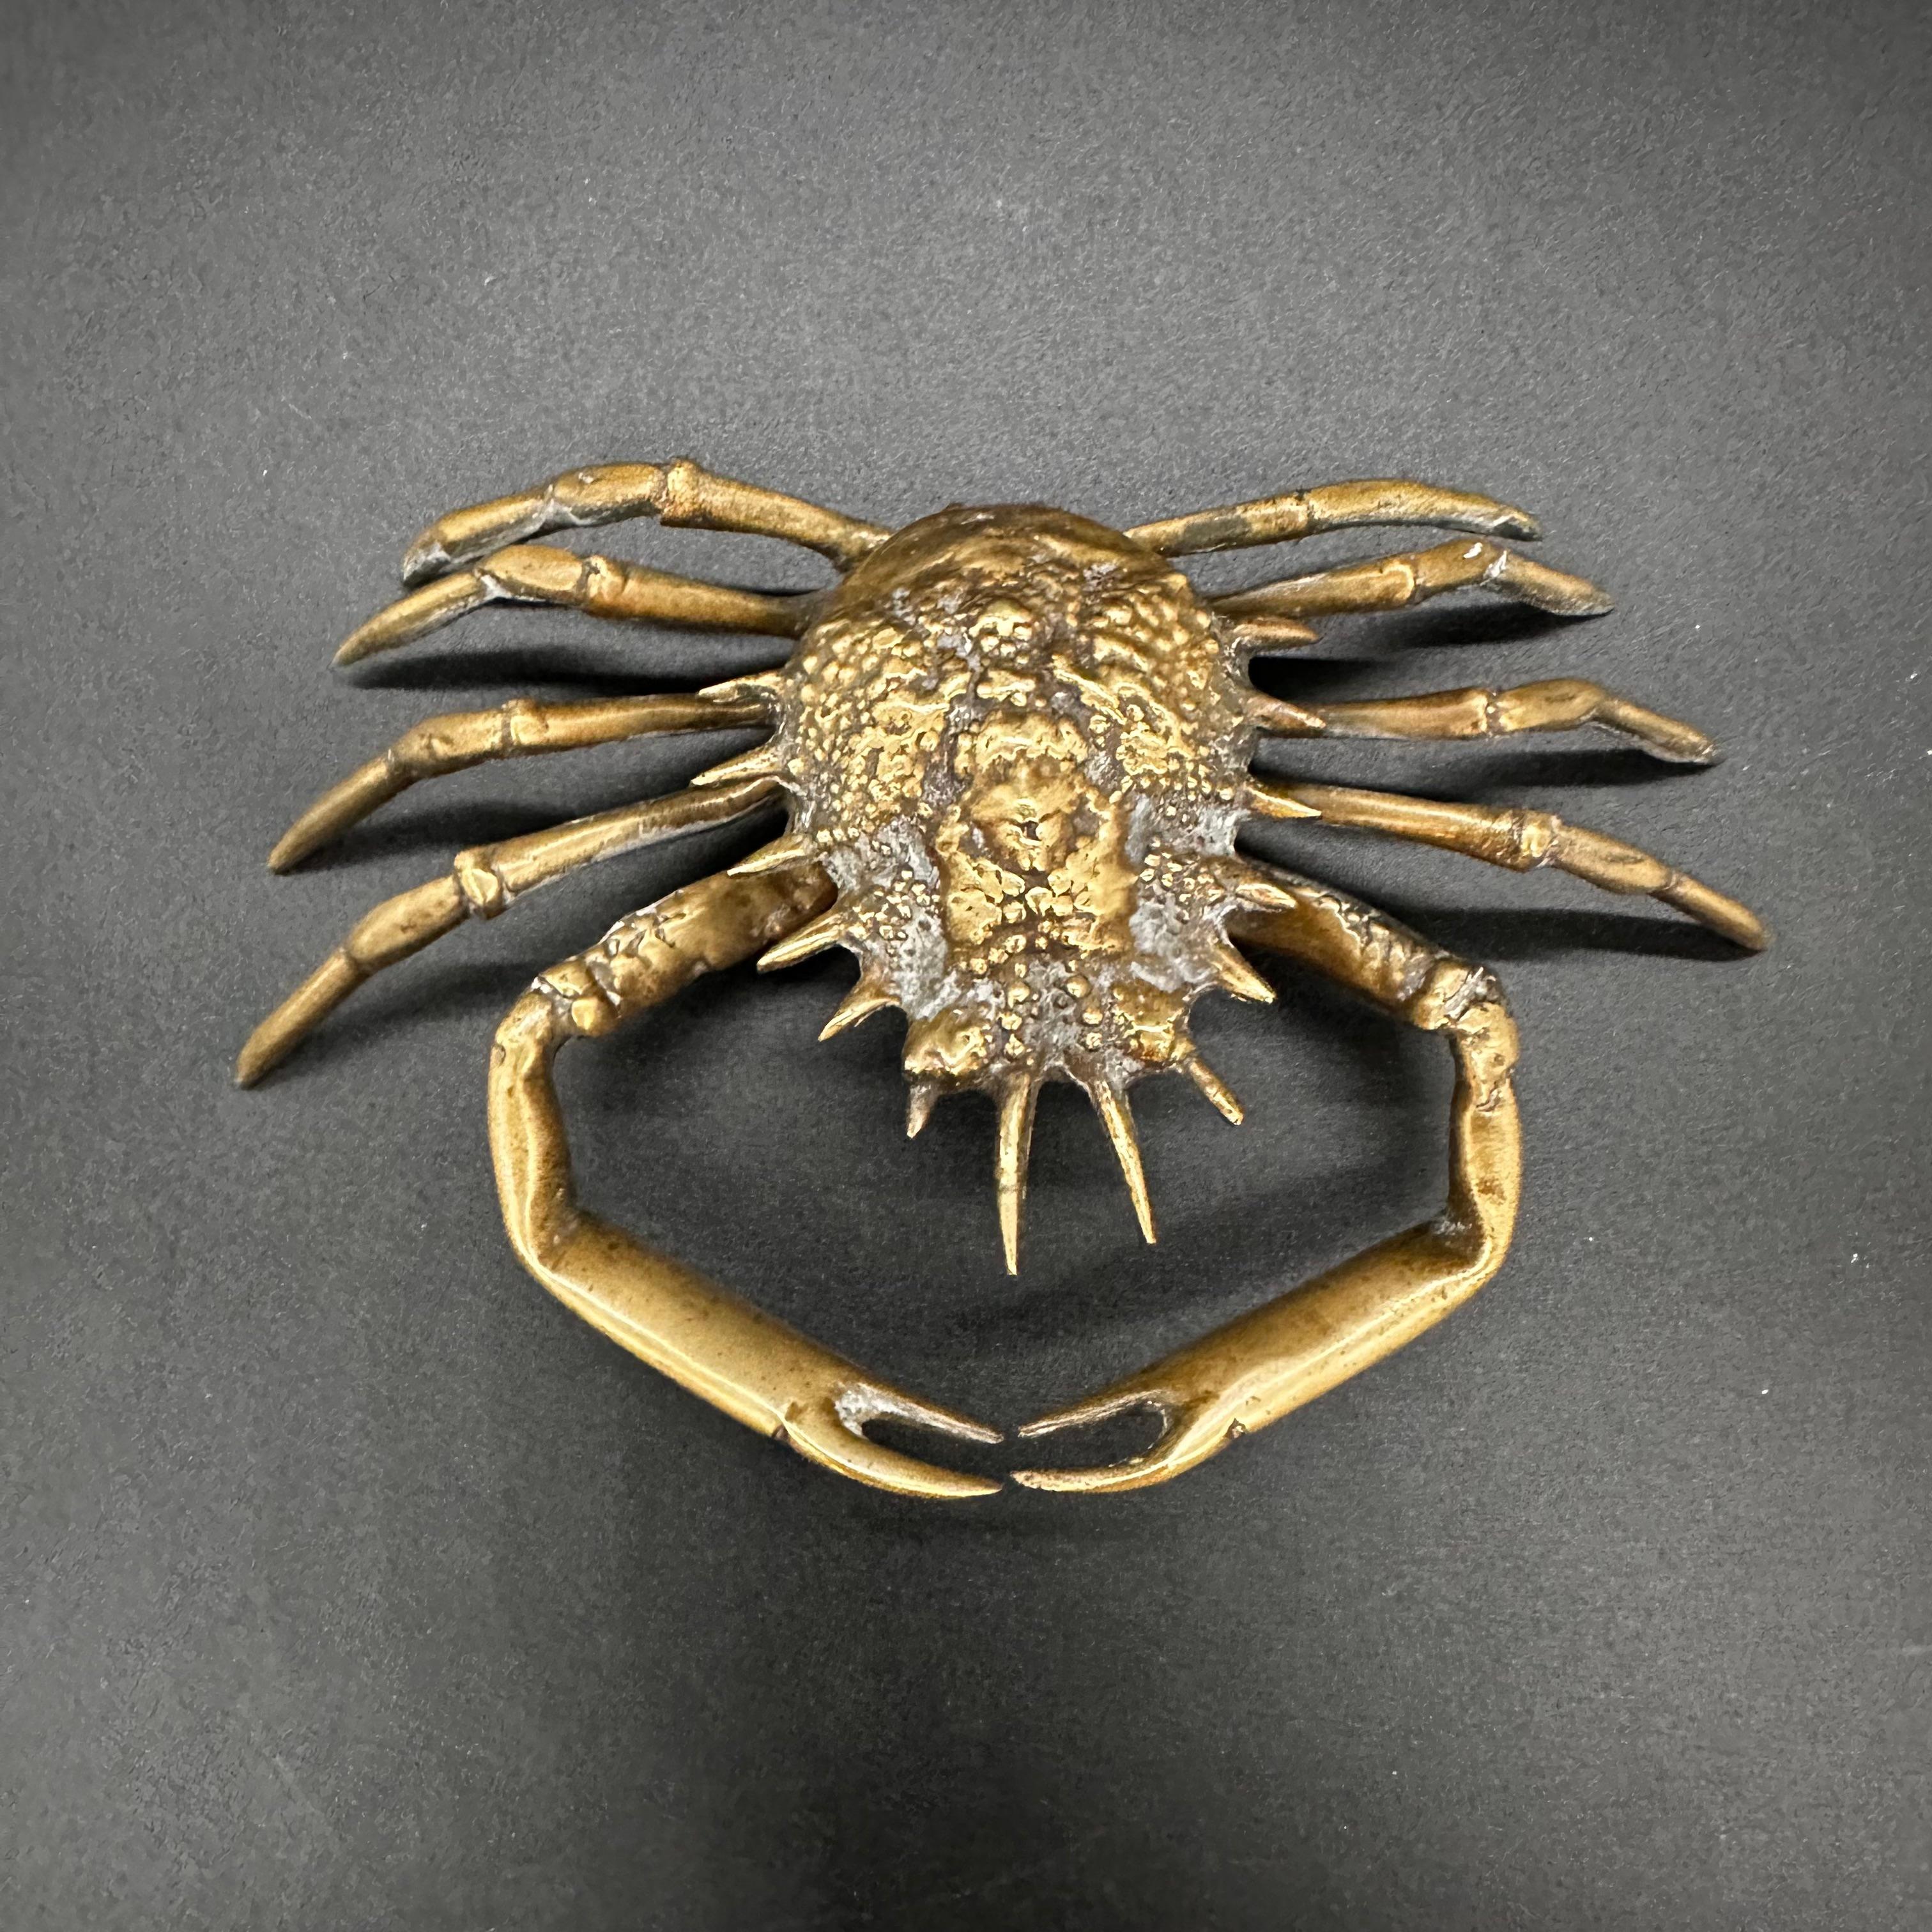 La sculpture de crabe décorative italienne vintage des années 1980 met en valeur la créativité et le sens artistique du design italien. Fabriquée avec le souci du détail, cette captivante sculpture de crabe ajoute une touche fantaisiste à tout